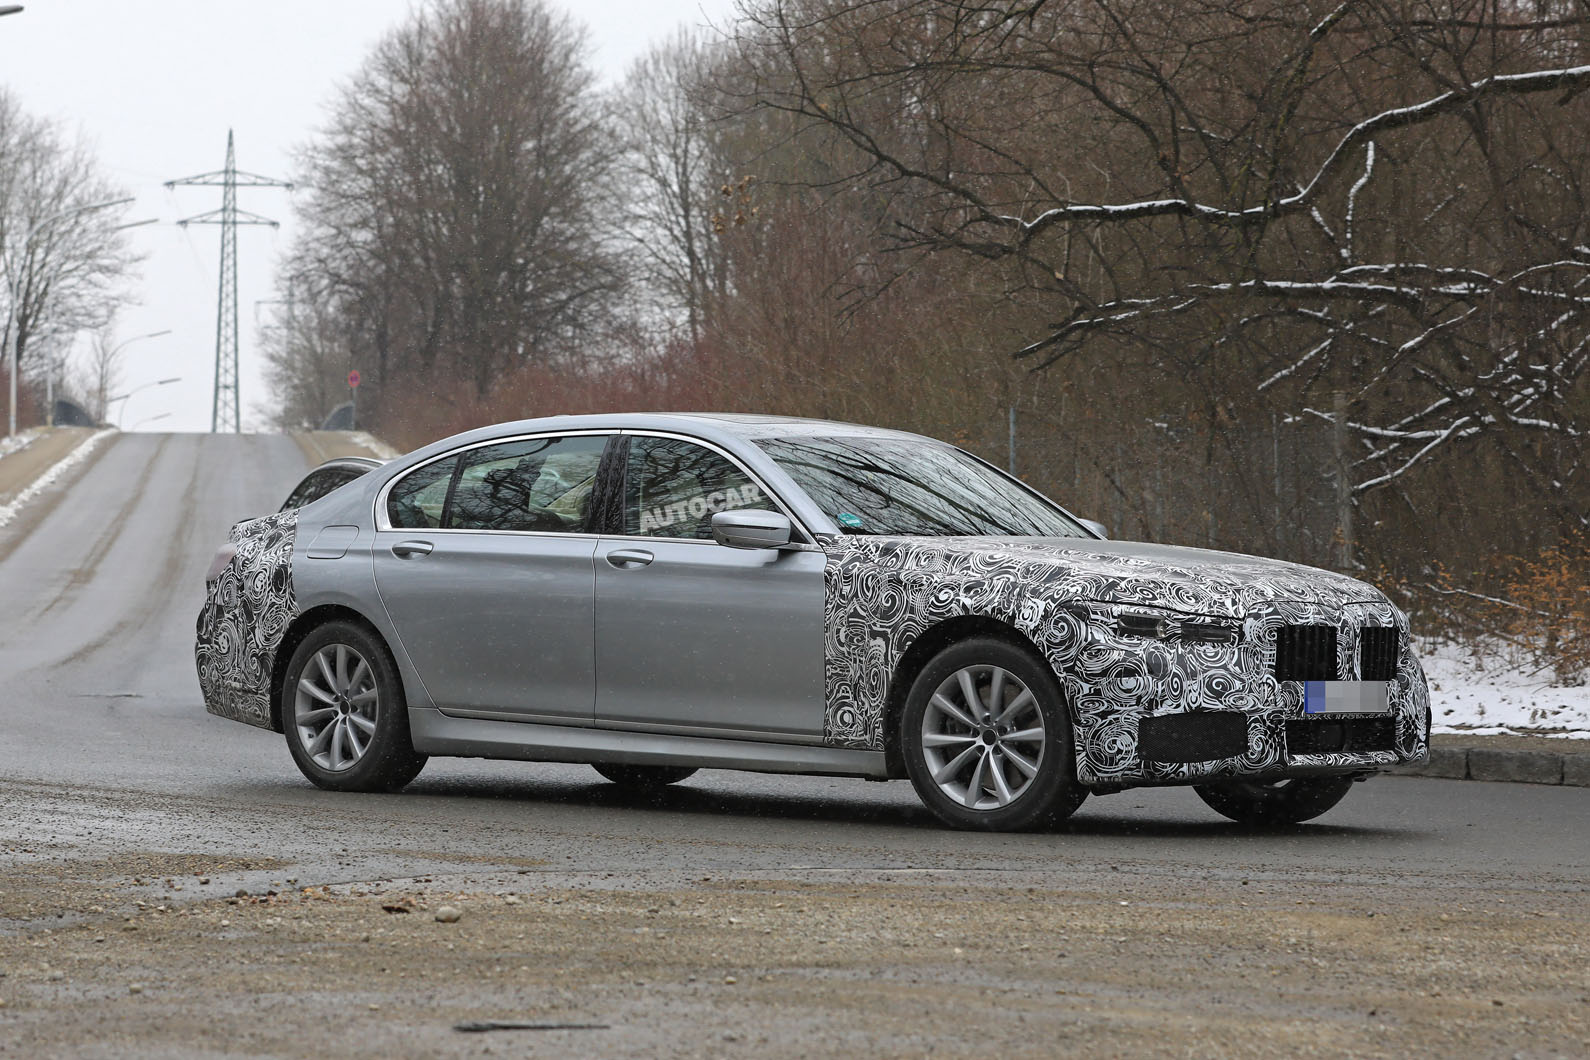 2022 Audi A8 spy shots: Mid-life facelift may see Maybach rival introduced